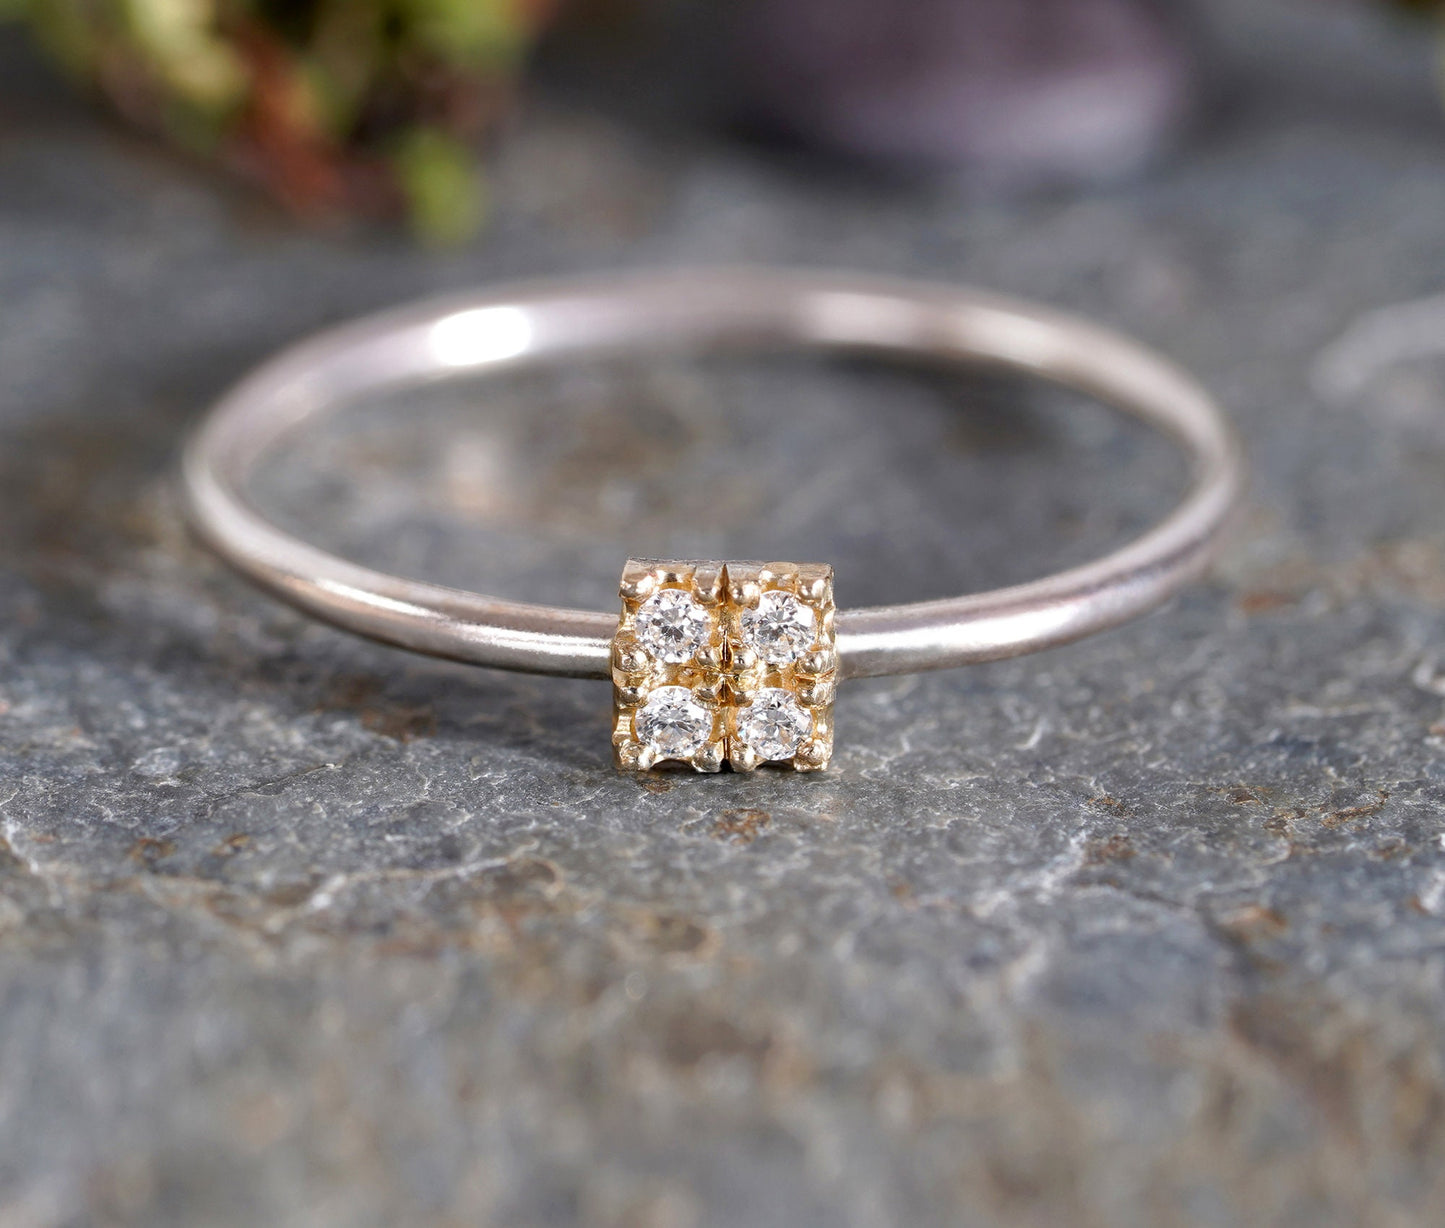 4 Diamonds Engagement Ring, Pave Diamond Engagement Ring, Square Diamond Ring, Mixed Metal Diamond Ring